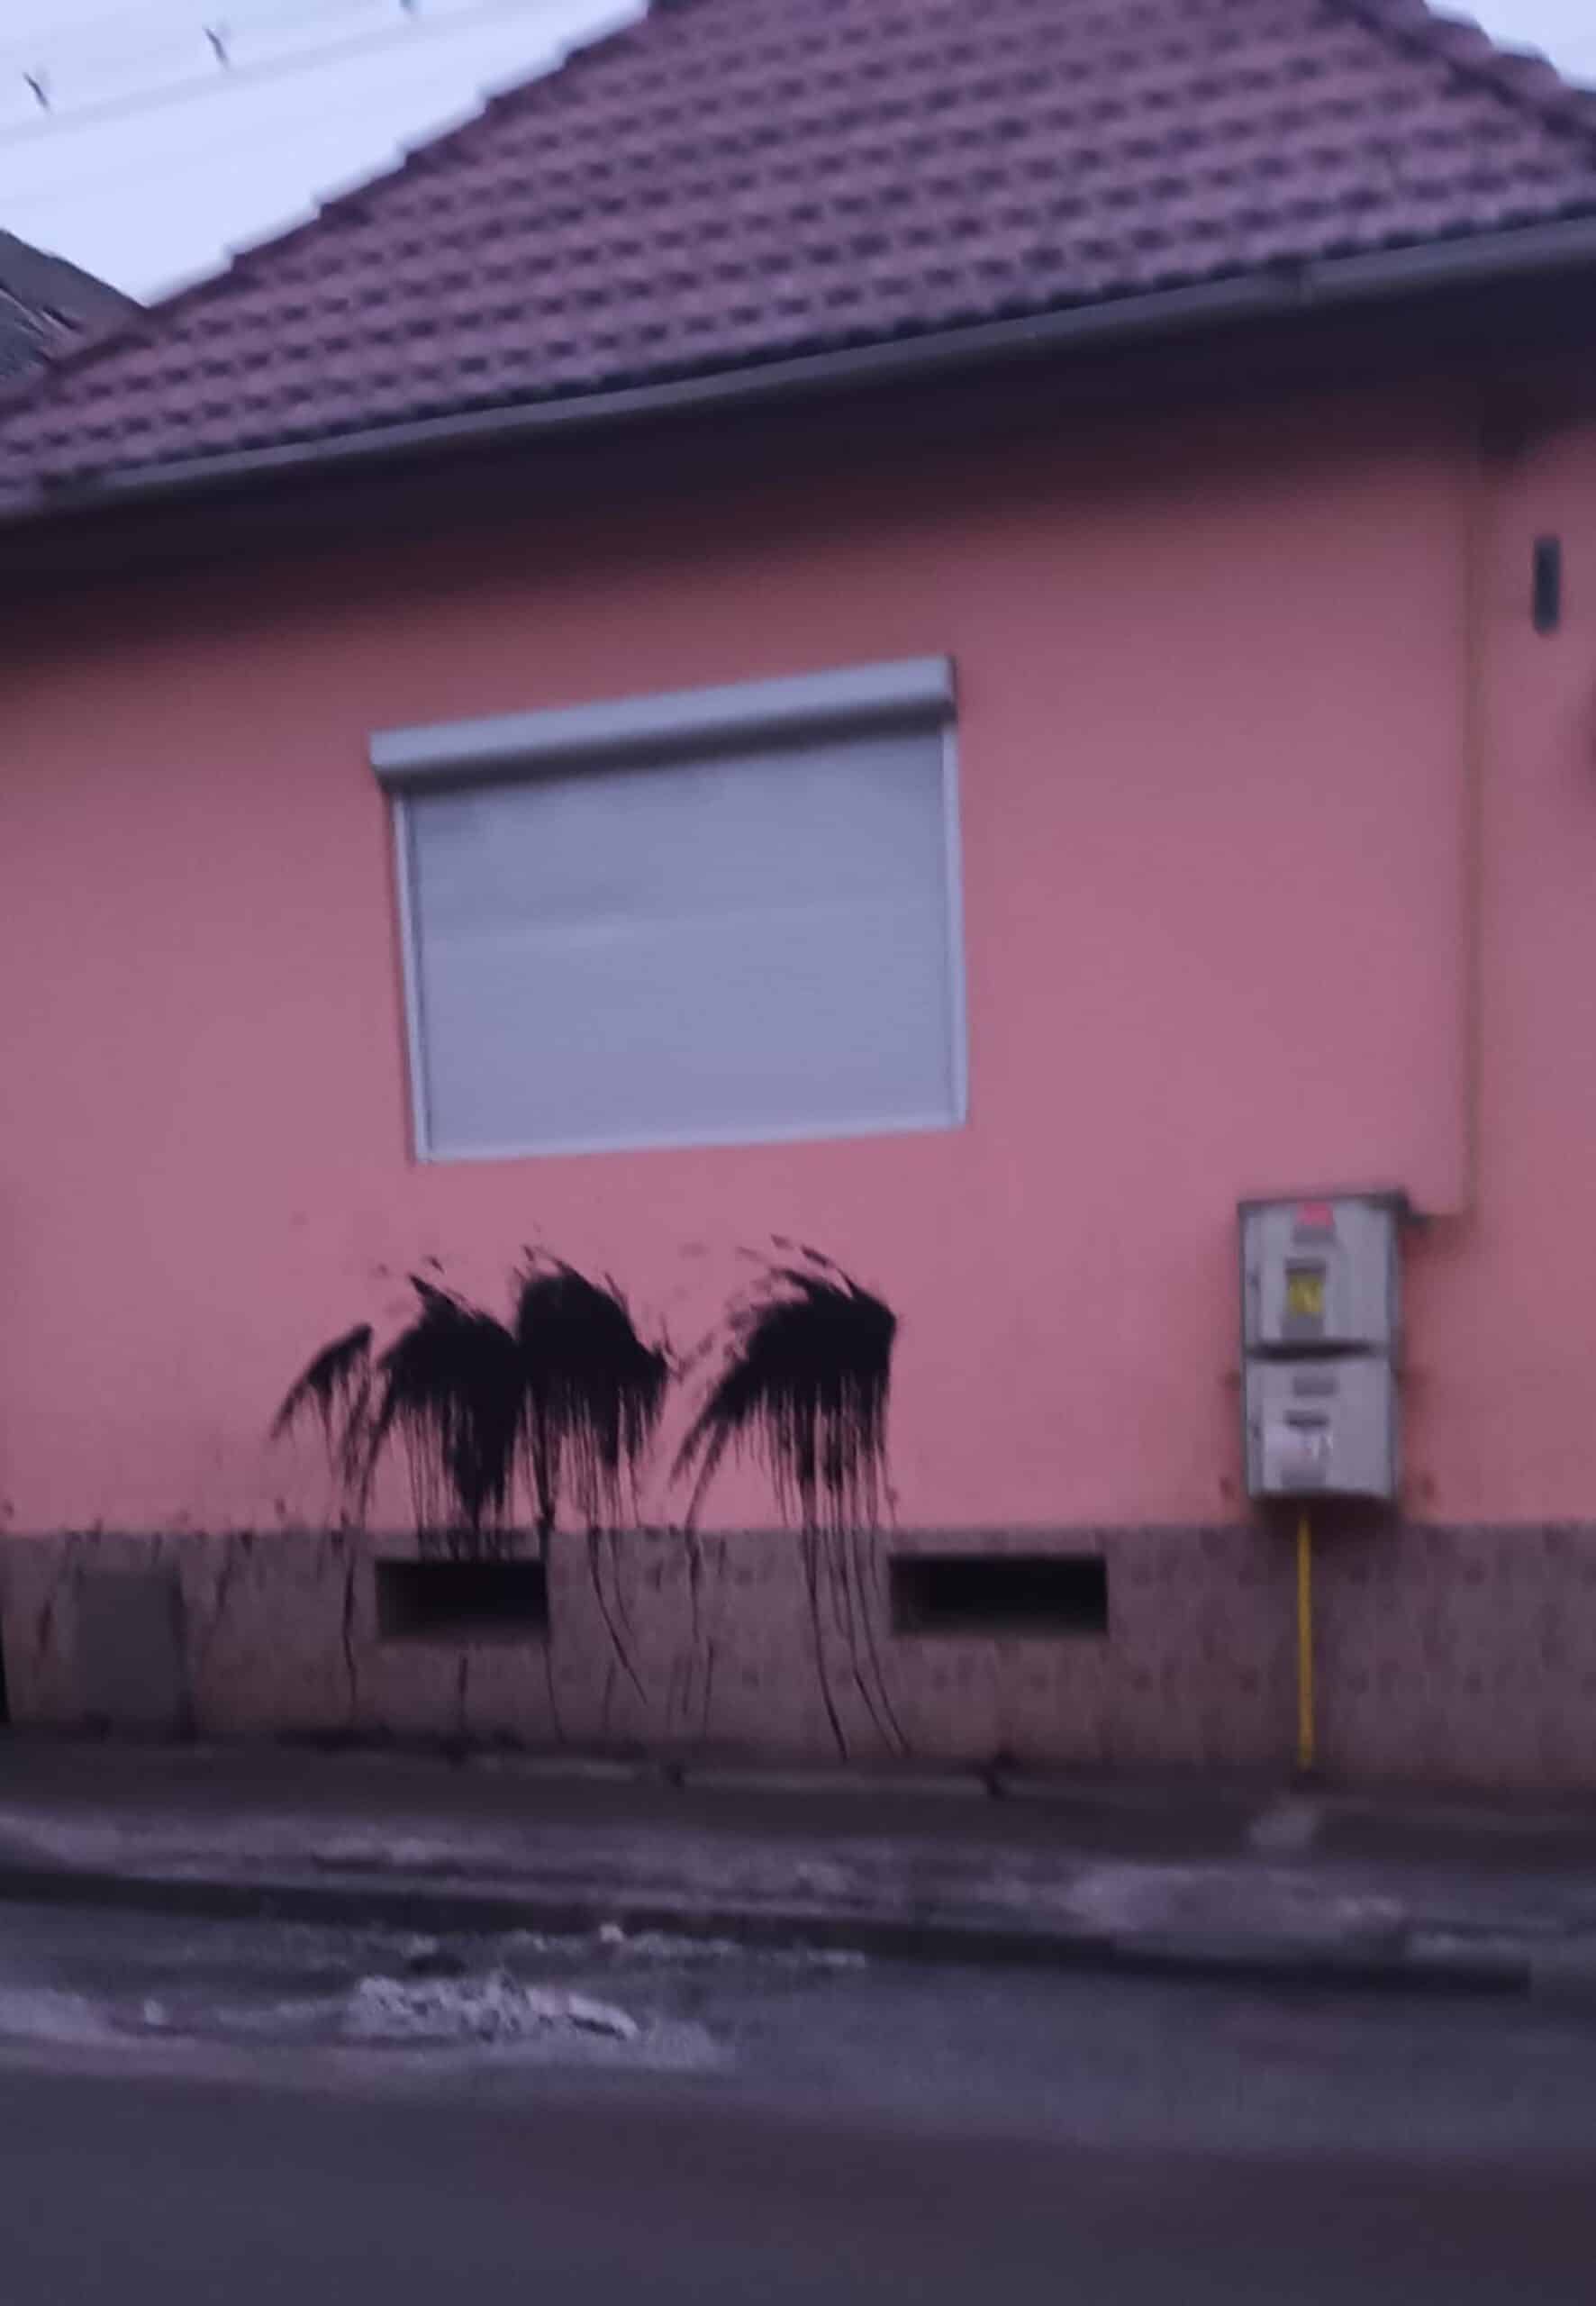 casa unui consilier local din cisnădie, vandalizată de persoane necunoscute. cornel vintilă: „posibil la comanda unora din conducerea primăriei” (foto)